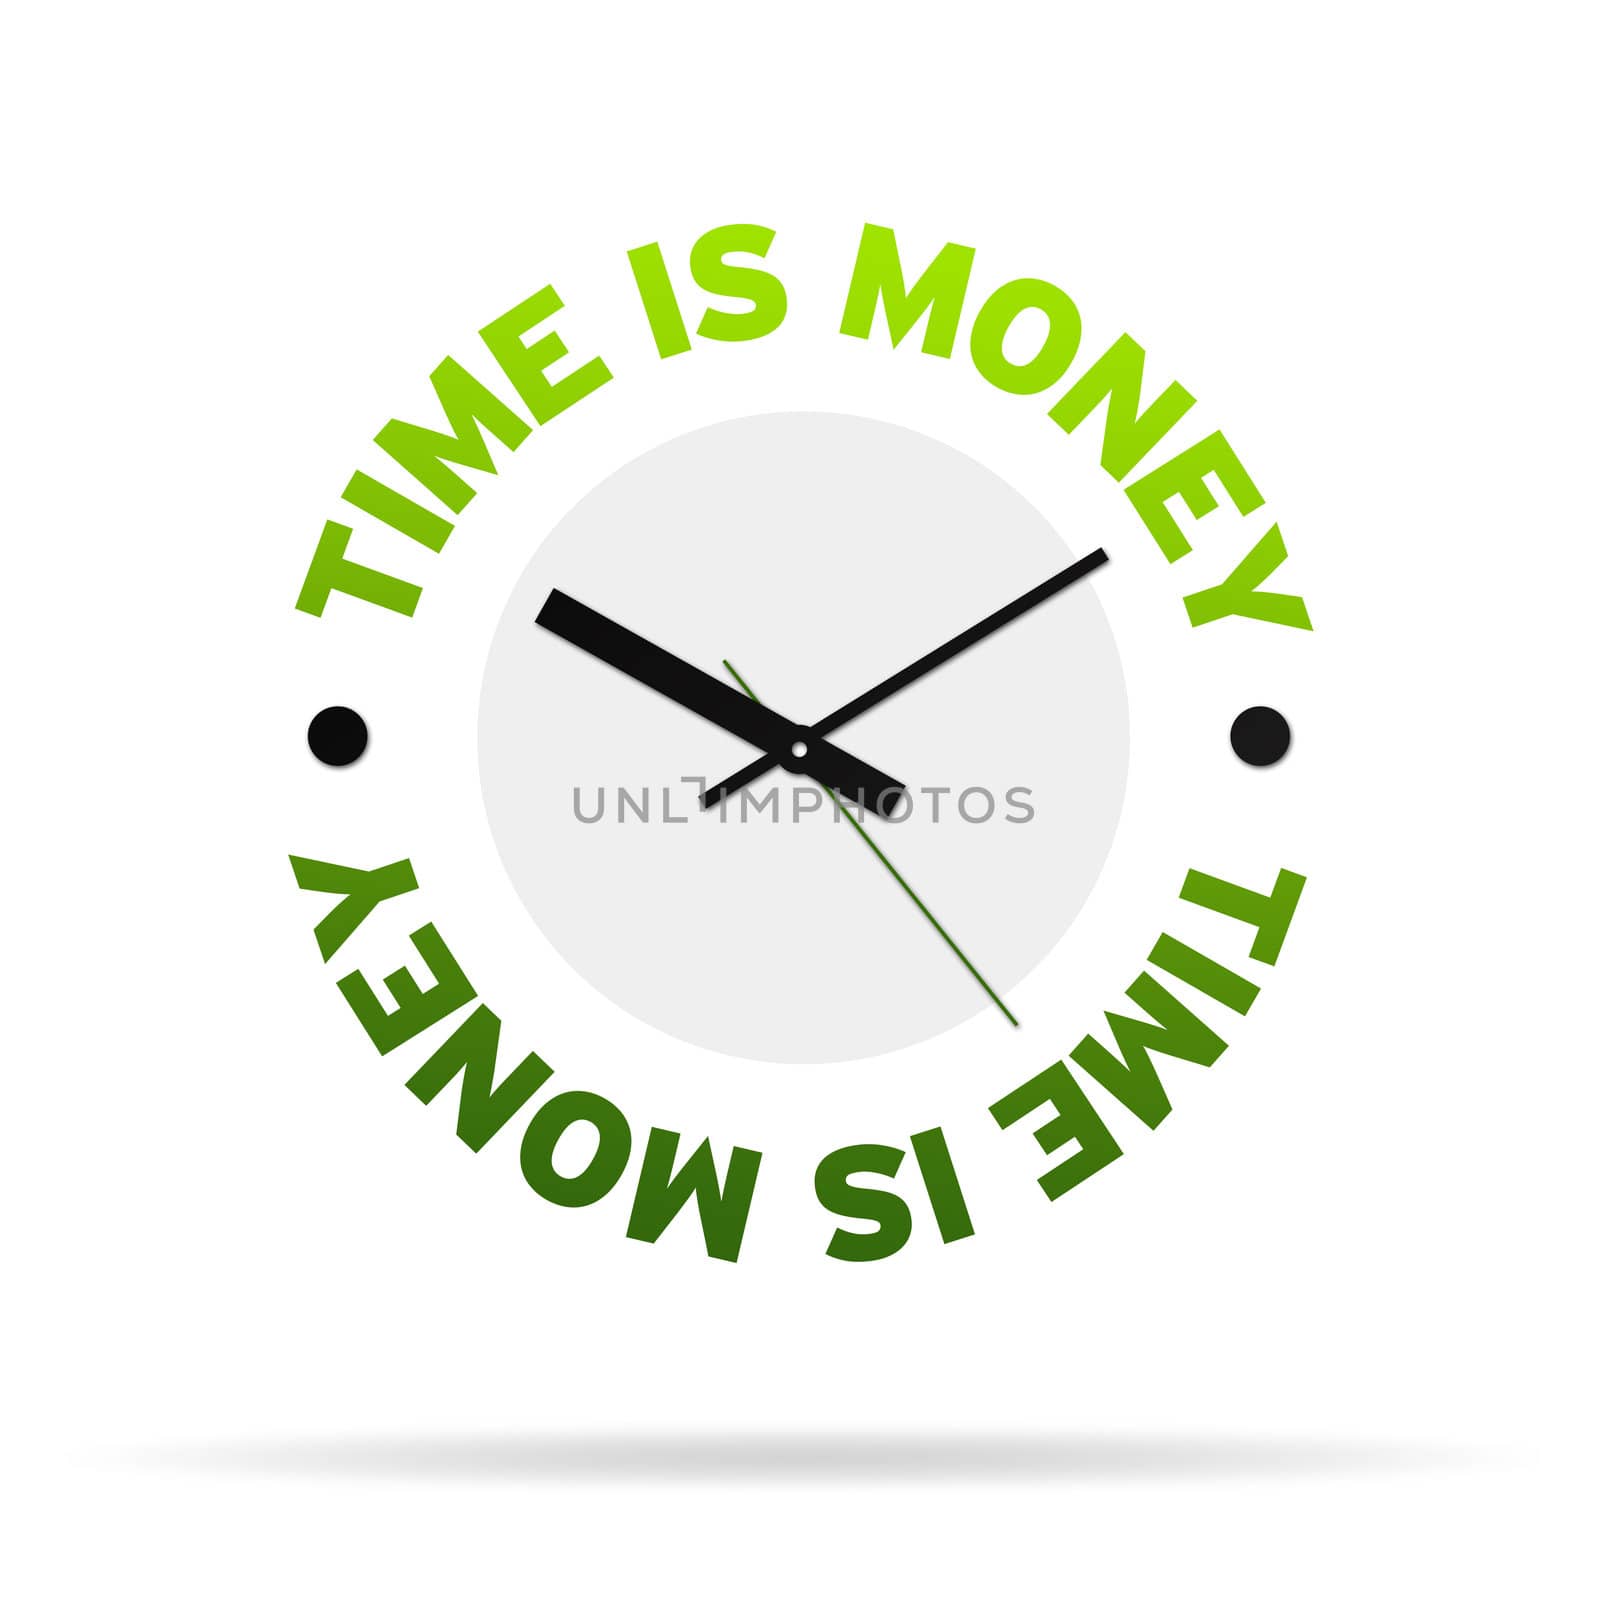 Time is Money Clock by kbuntu